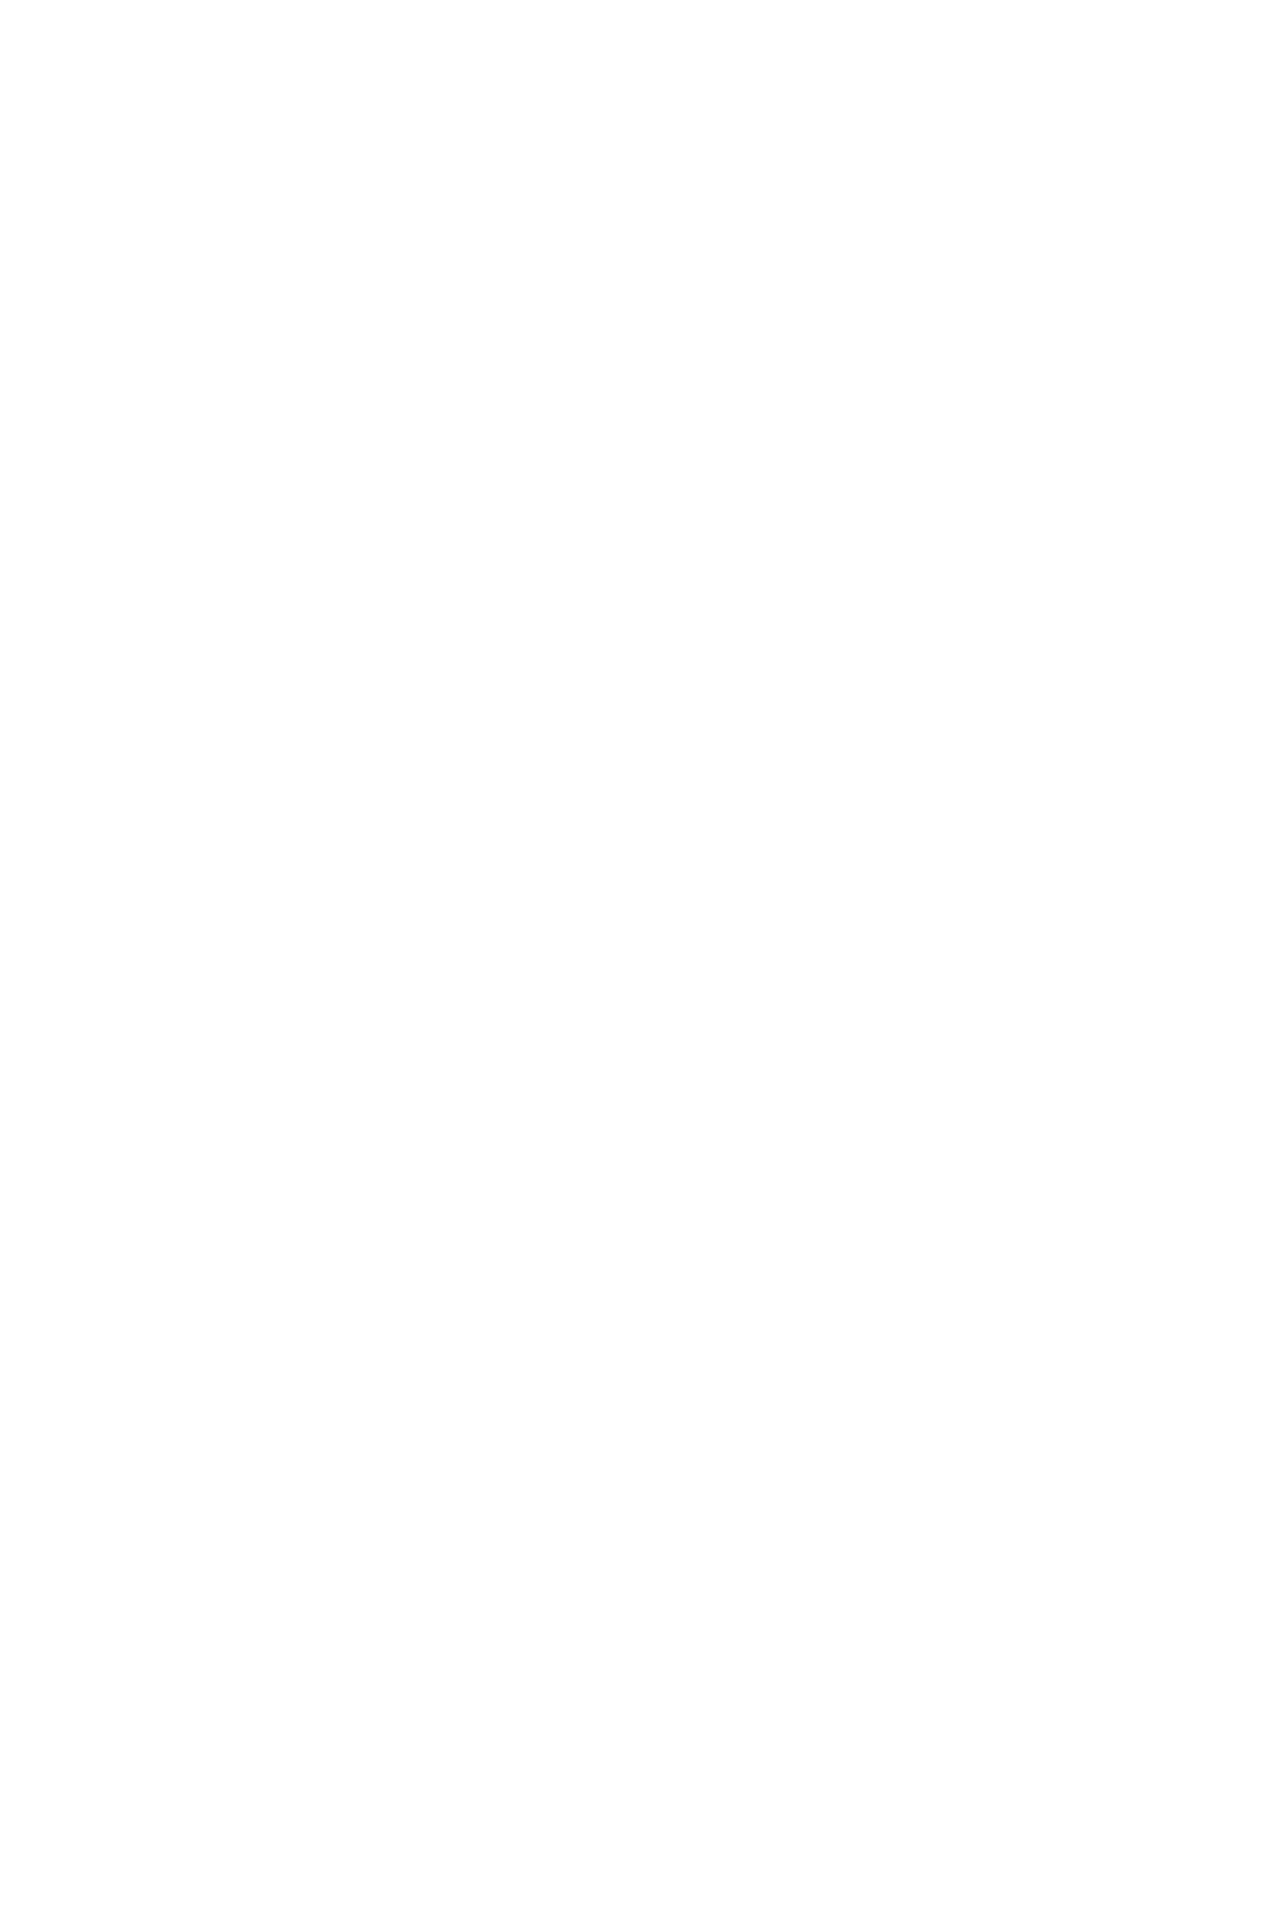 Туманность Ориона